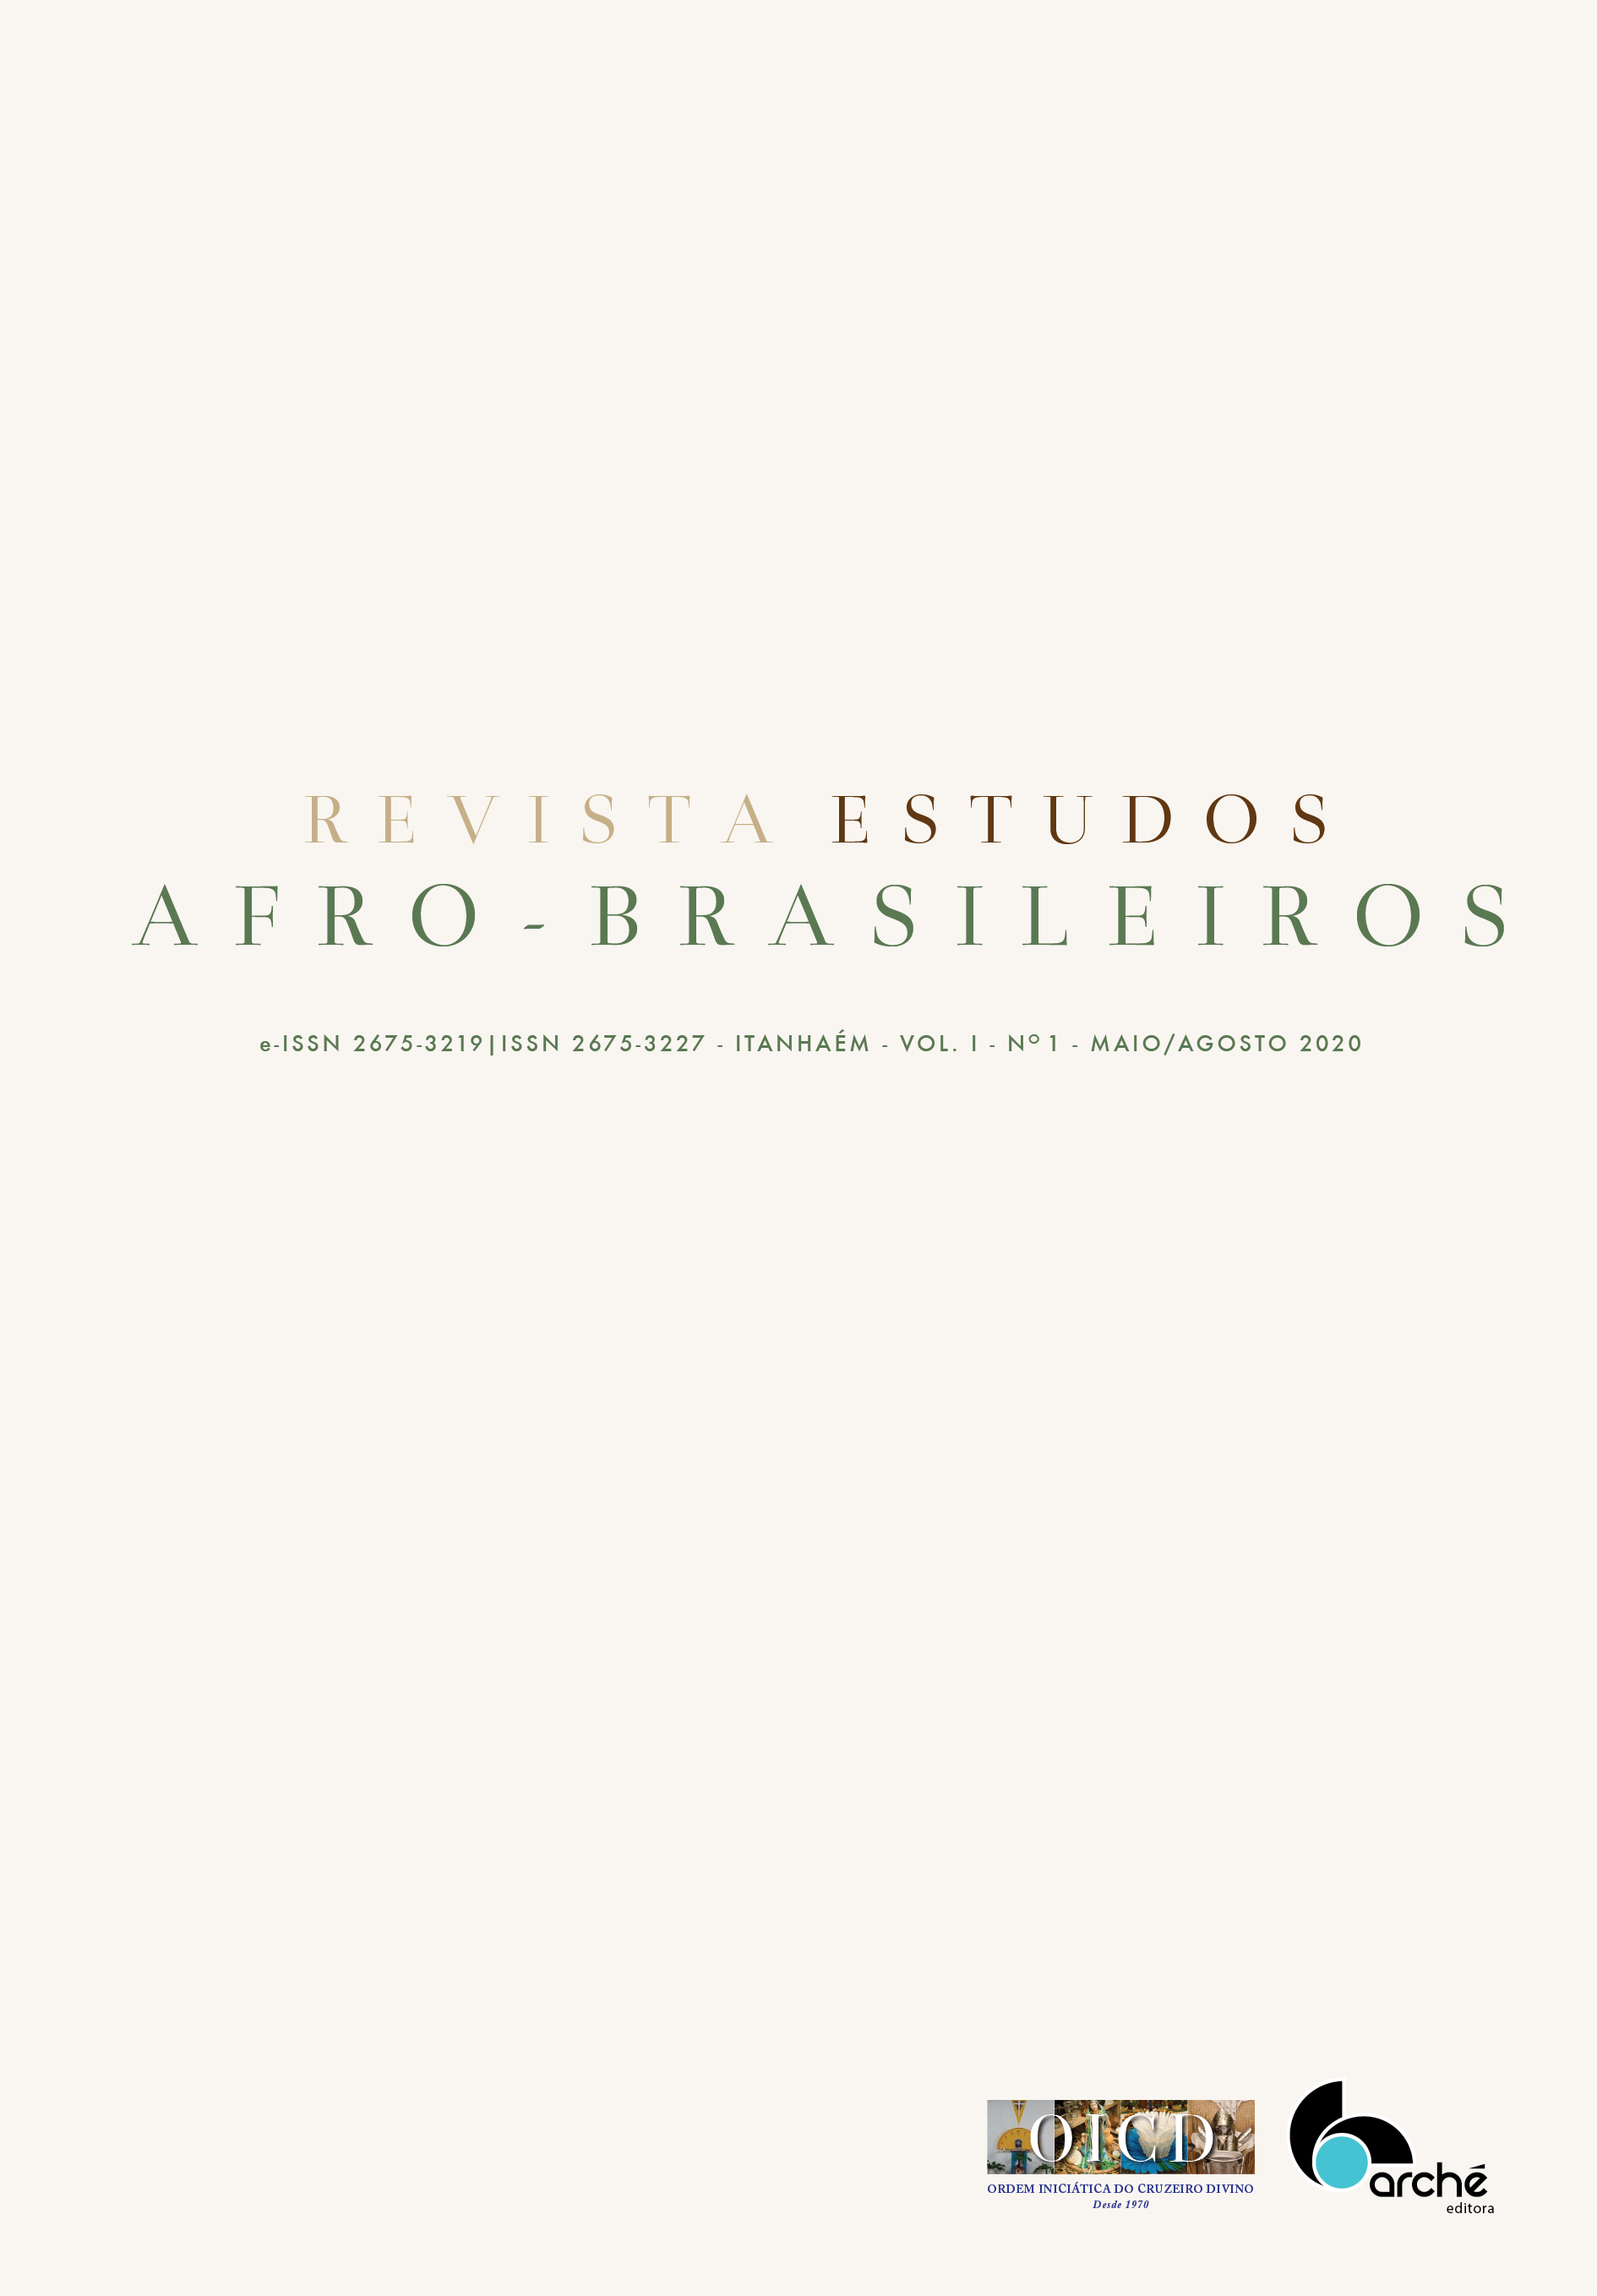 Capa do primeiro número da revista, em que se lê Revista Estudos Afro-Brasileiros, Itanhaém, Vol 1, n 1.